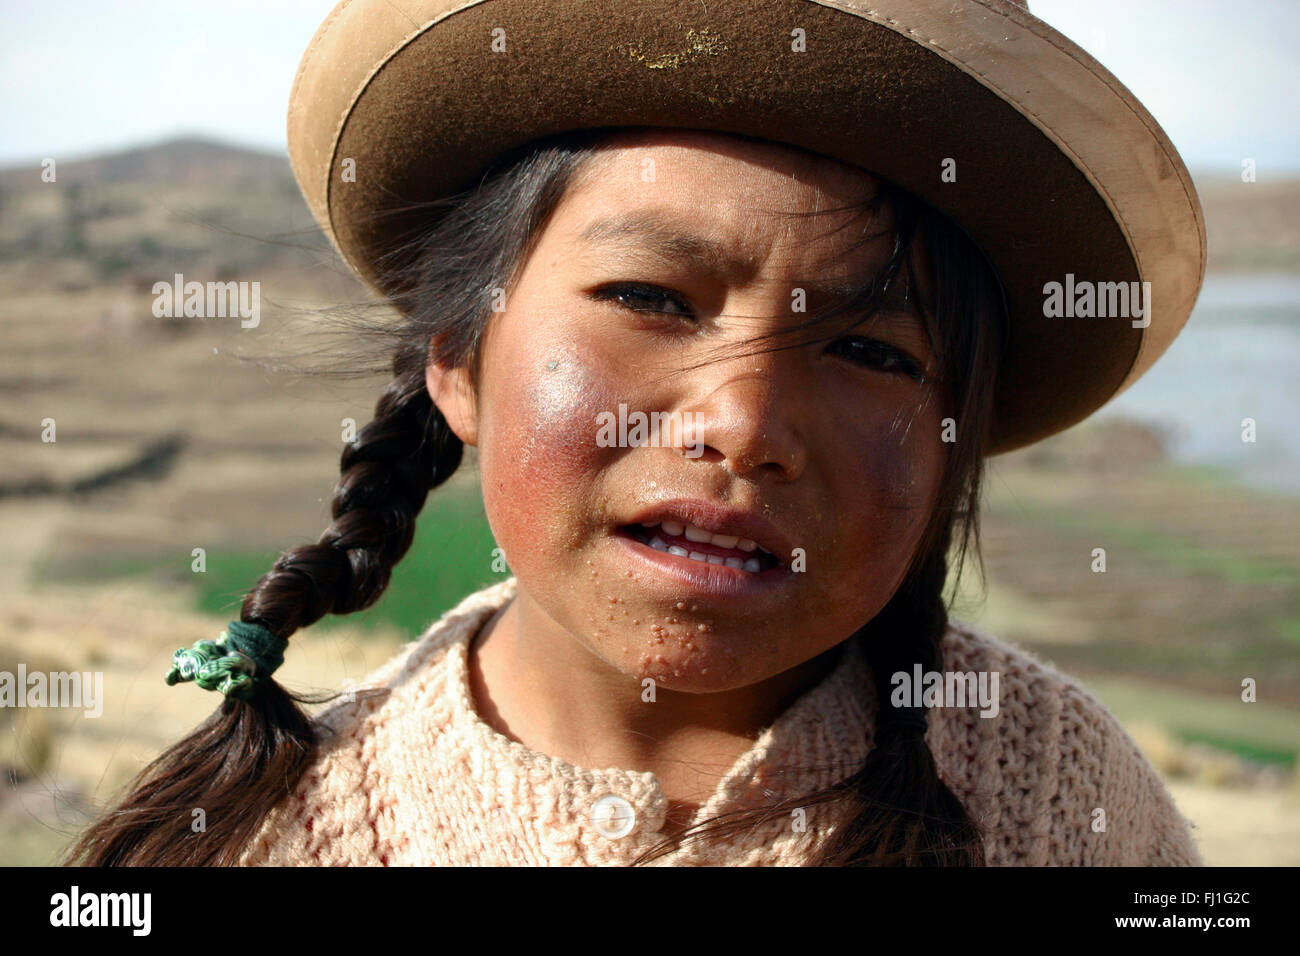 Portrait of Peruvian girl in Sillustani , Peru Stock Photo